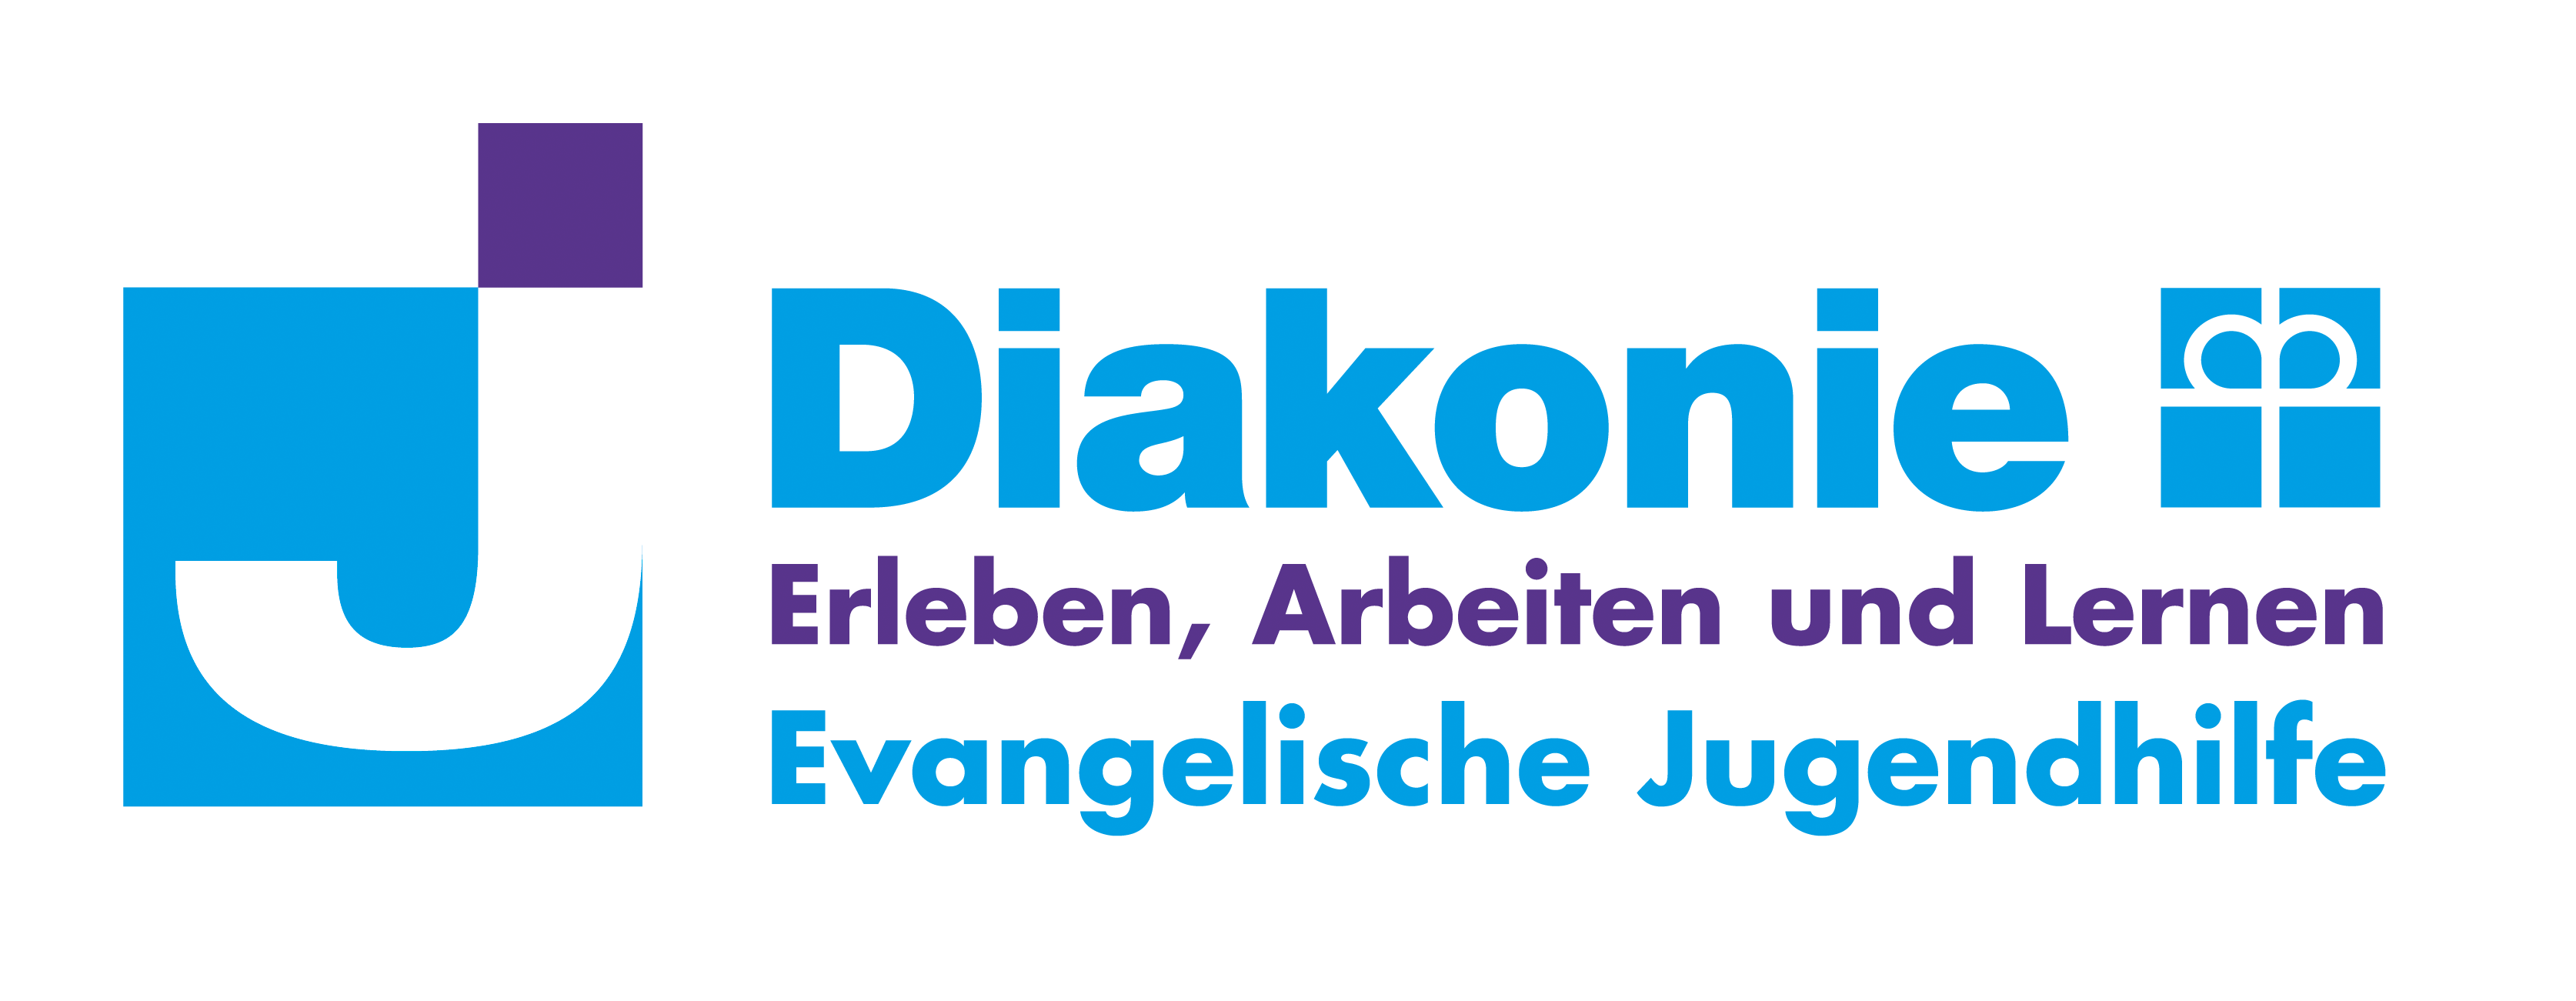 Logo: Erleben, Arbeiten und Lernen - Evangelische Jugendhilfe e.V.